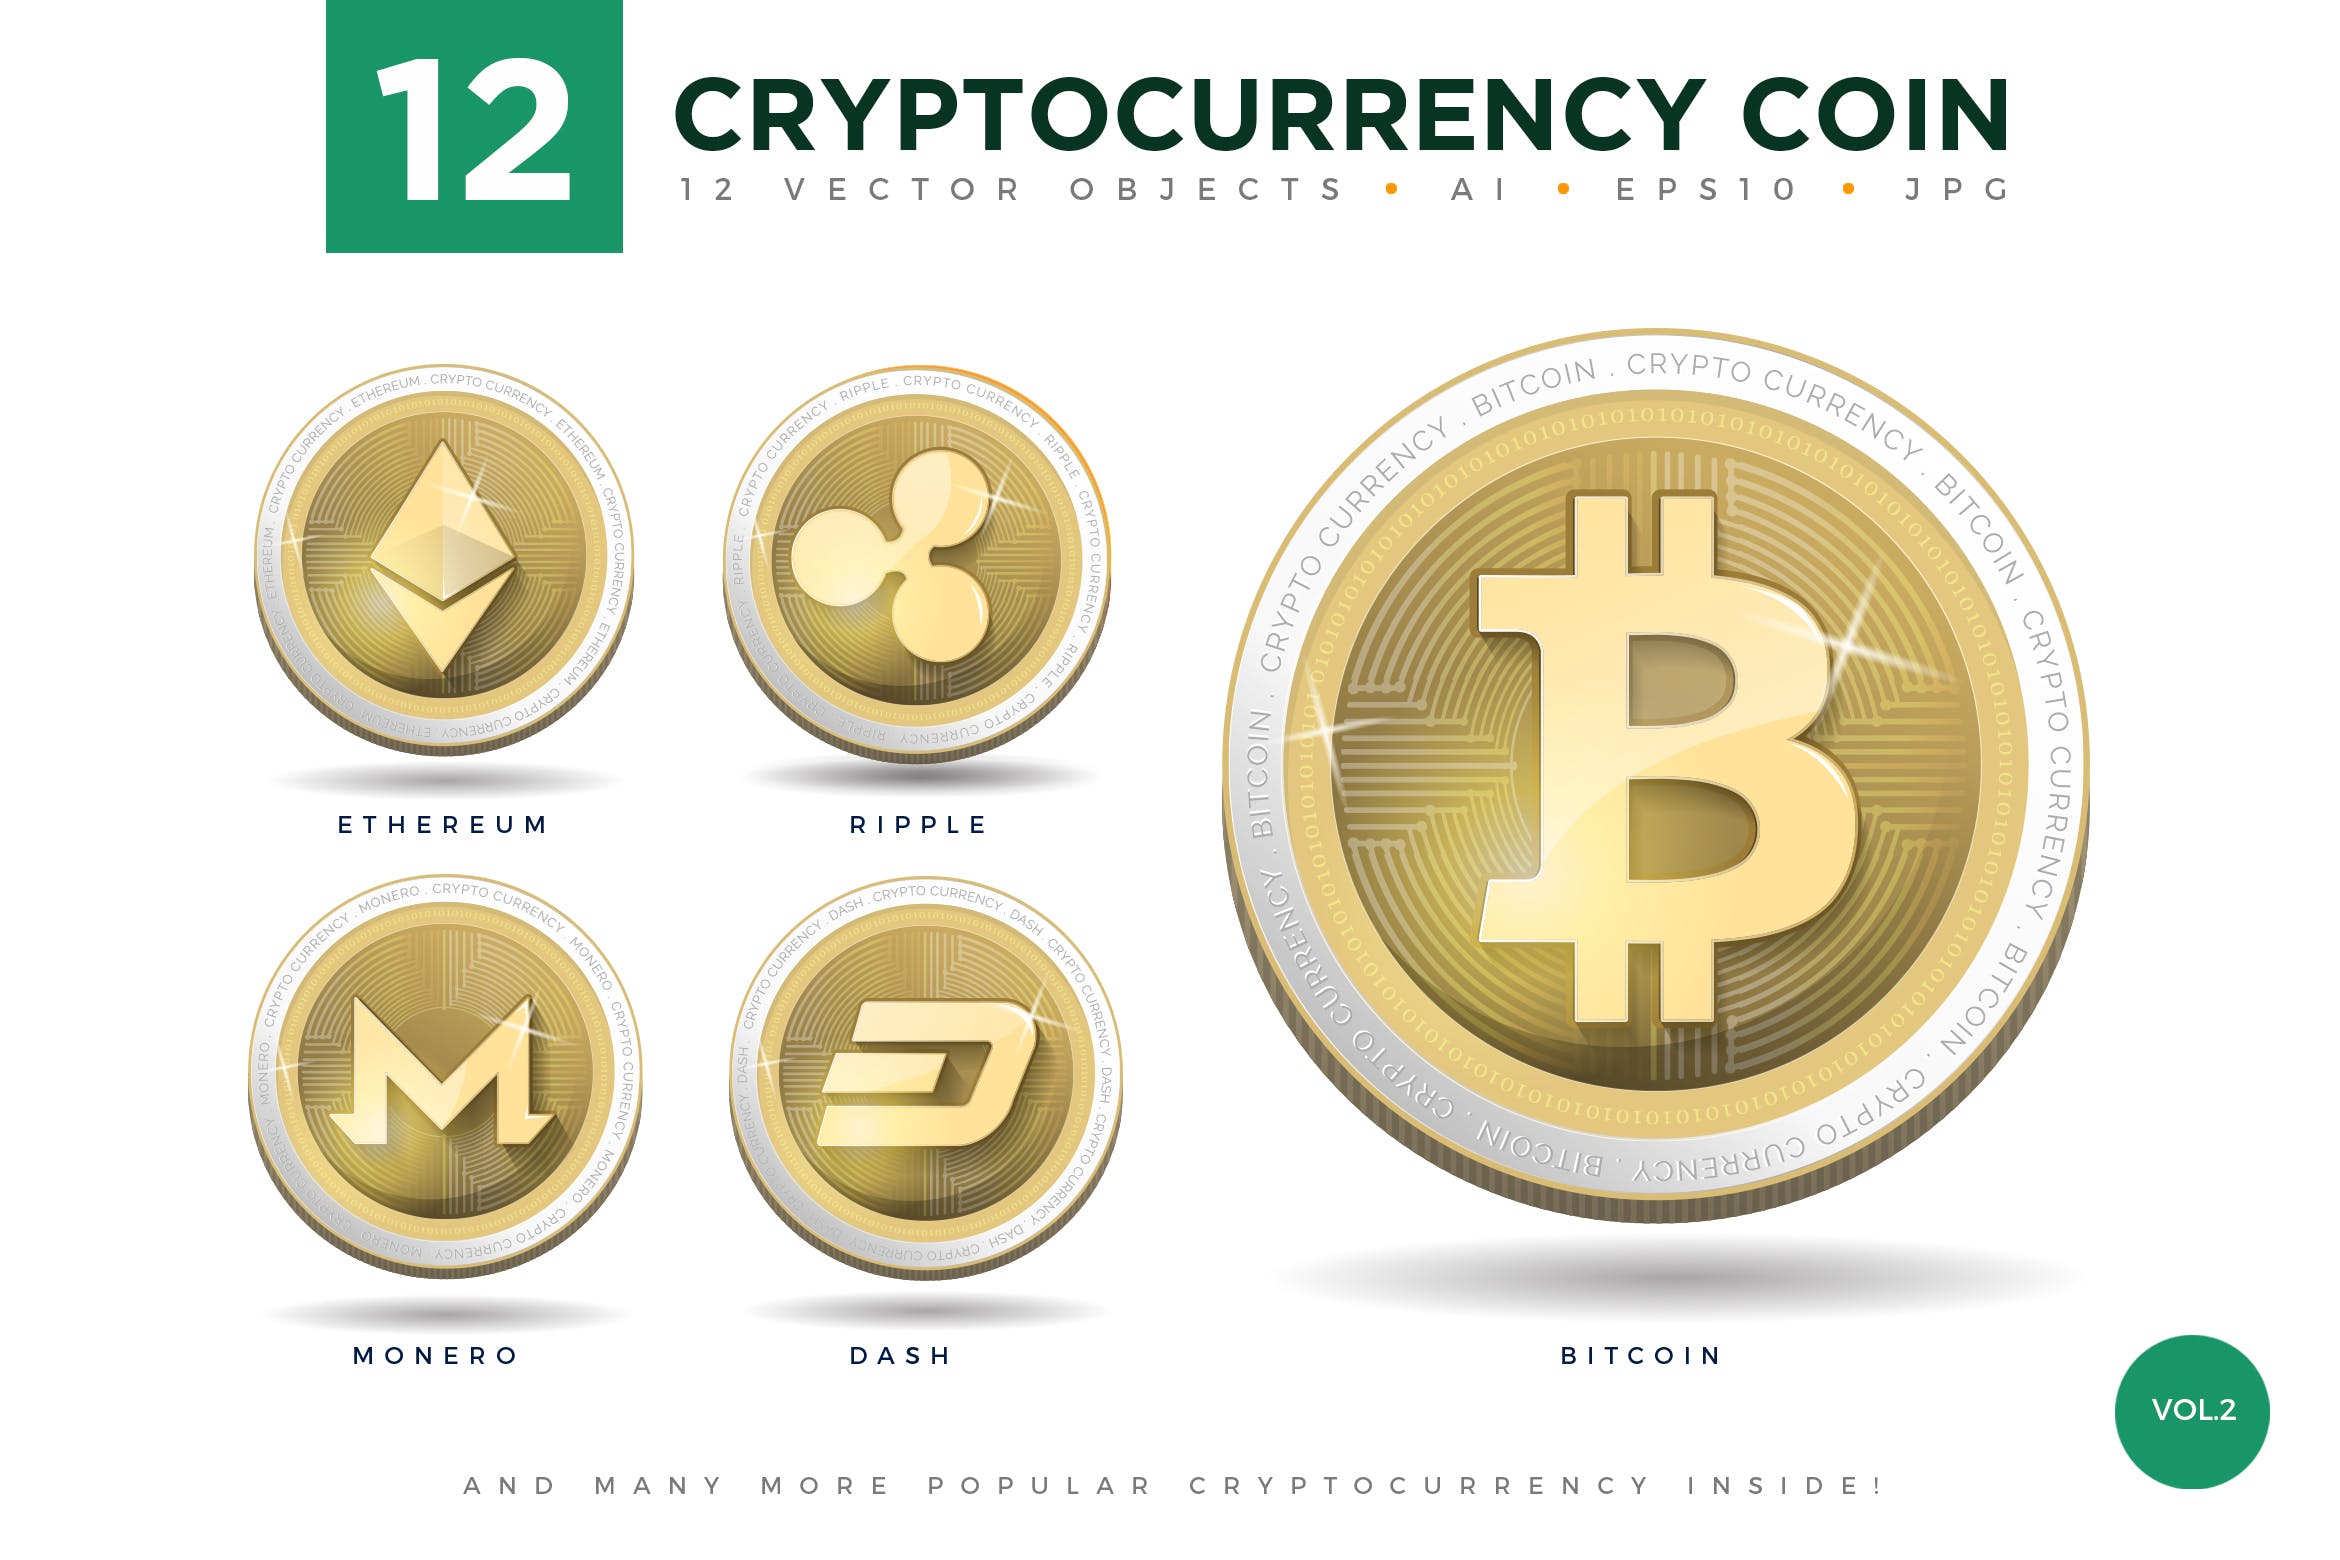 12枚加密货币主题硬币形状矢量16设计素材网精选图标合集v2 12 Crypto Currency Coin Vector Illustration Set 2插图